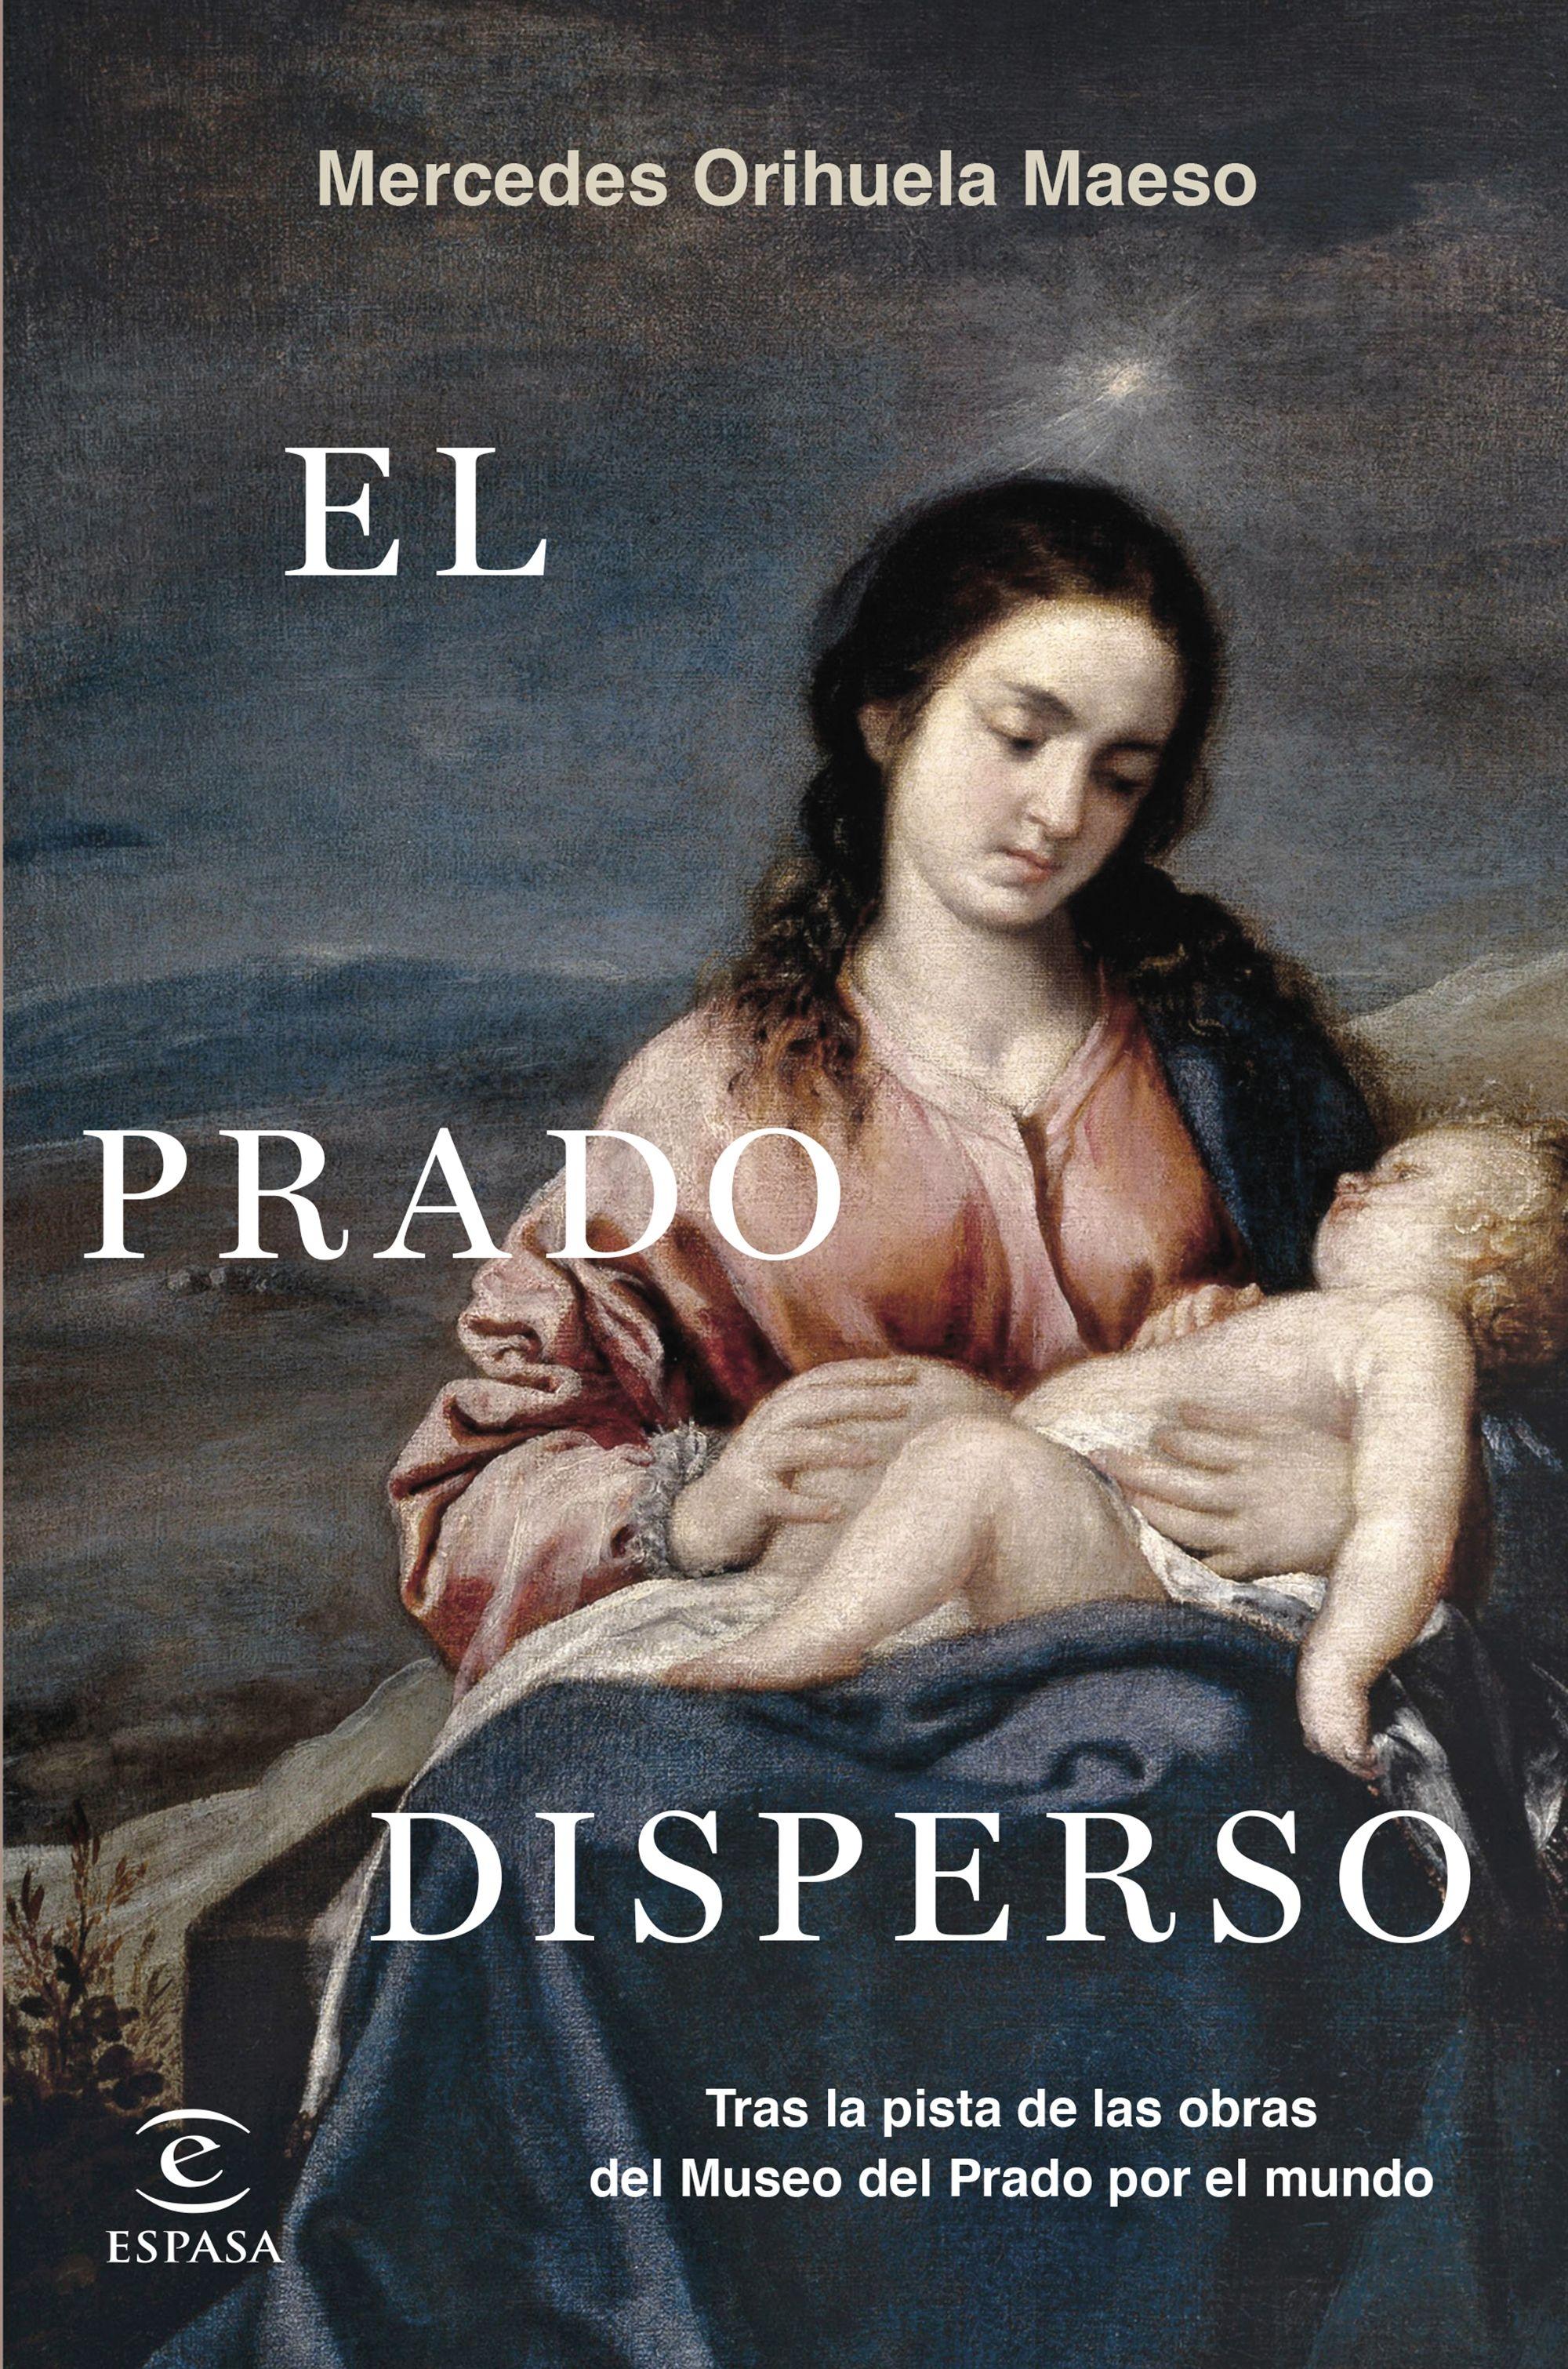 Prado disperso, El "Tras las obras del Museo del Prado por el mundo"